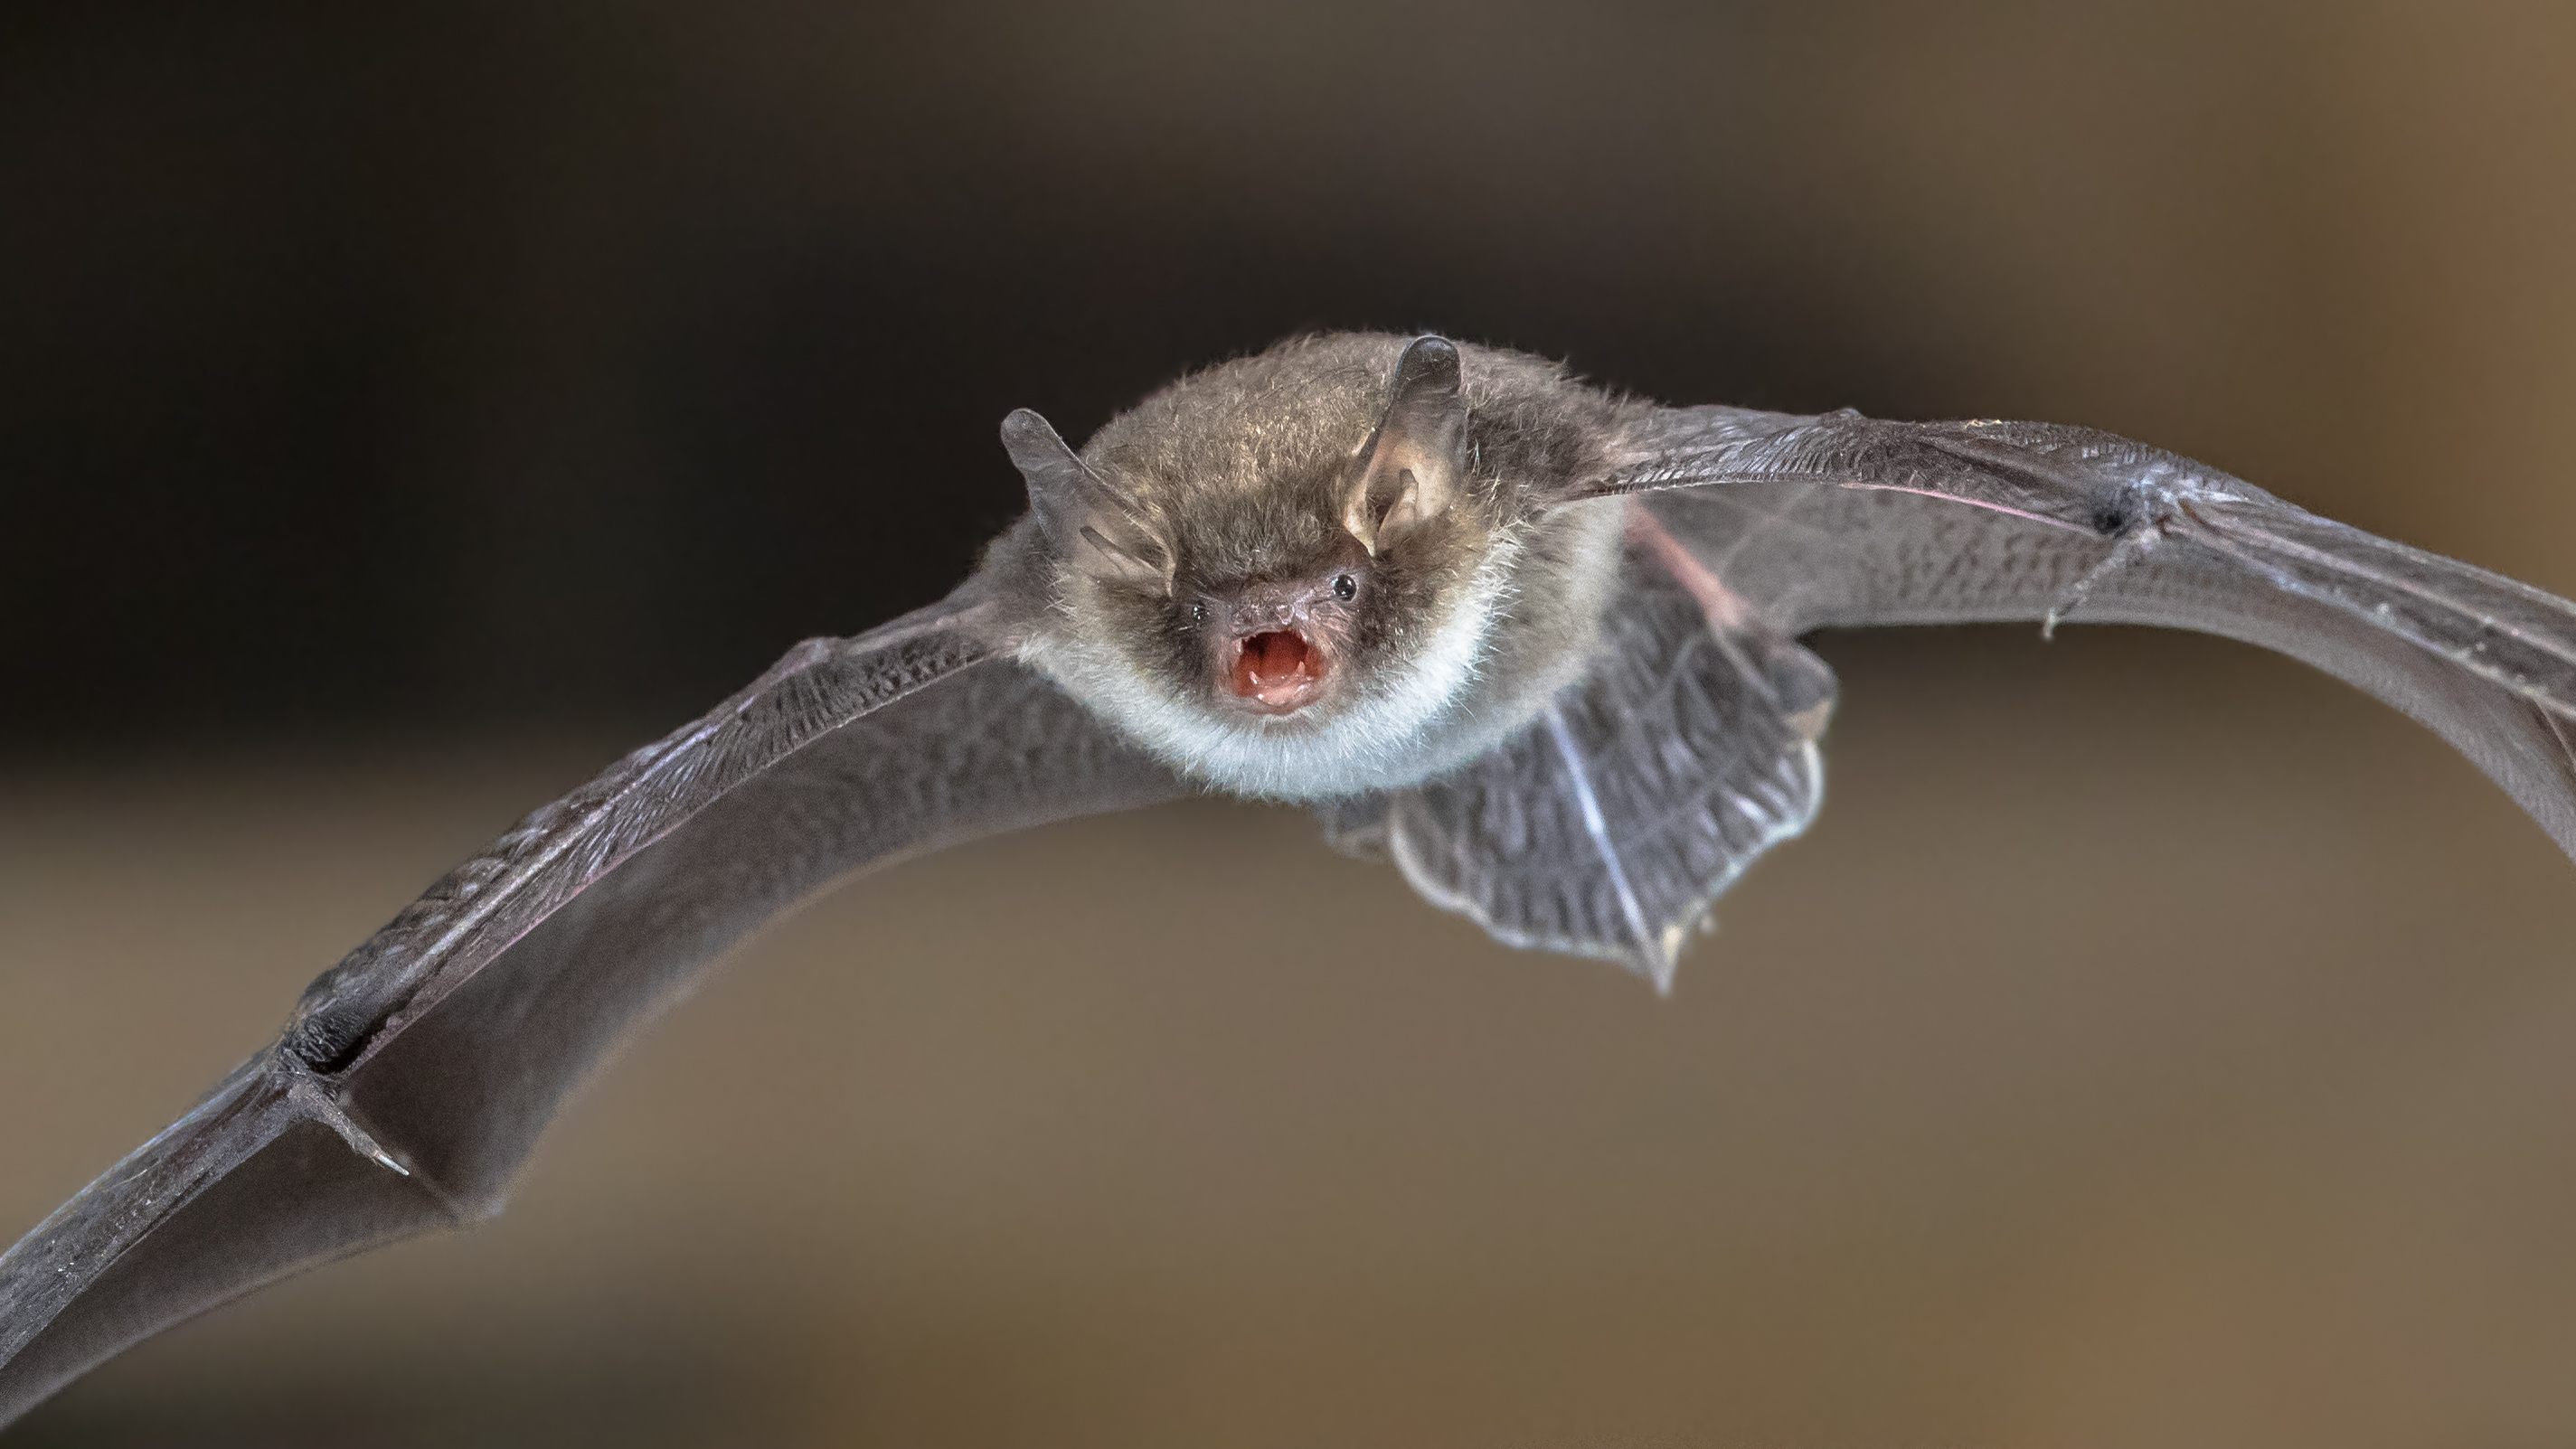 Close up of natterer's bat in flight